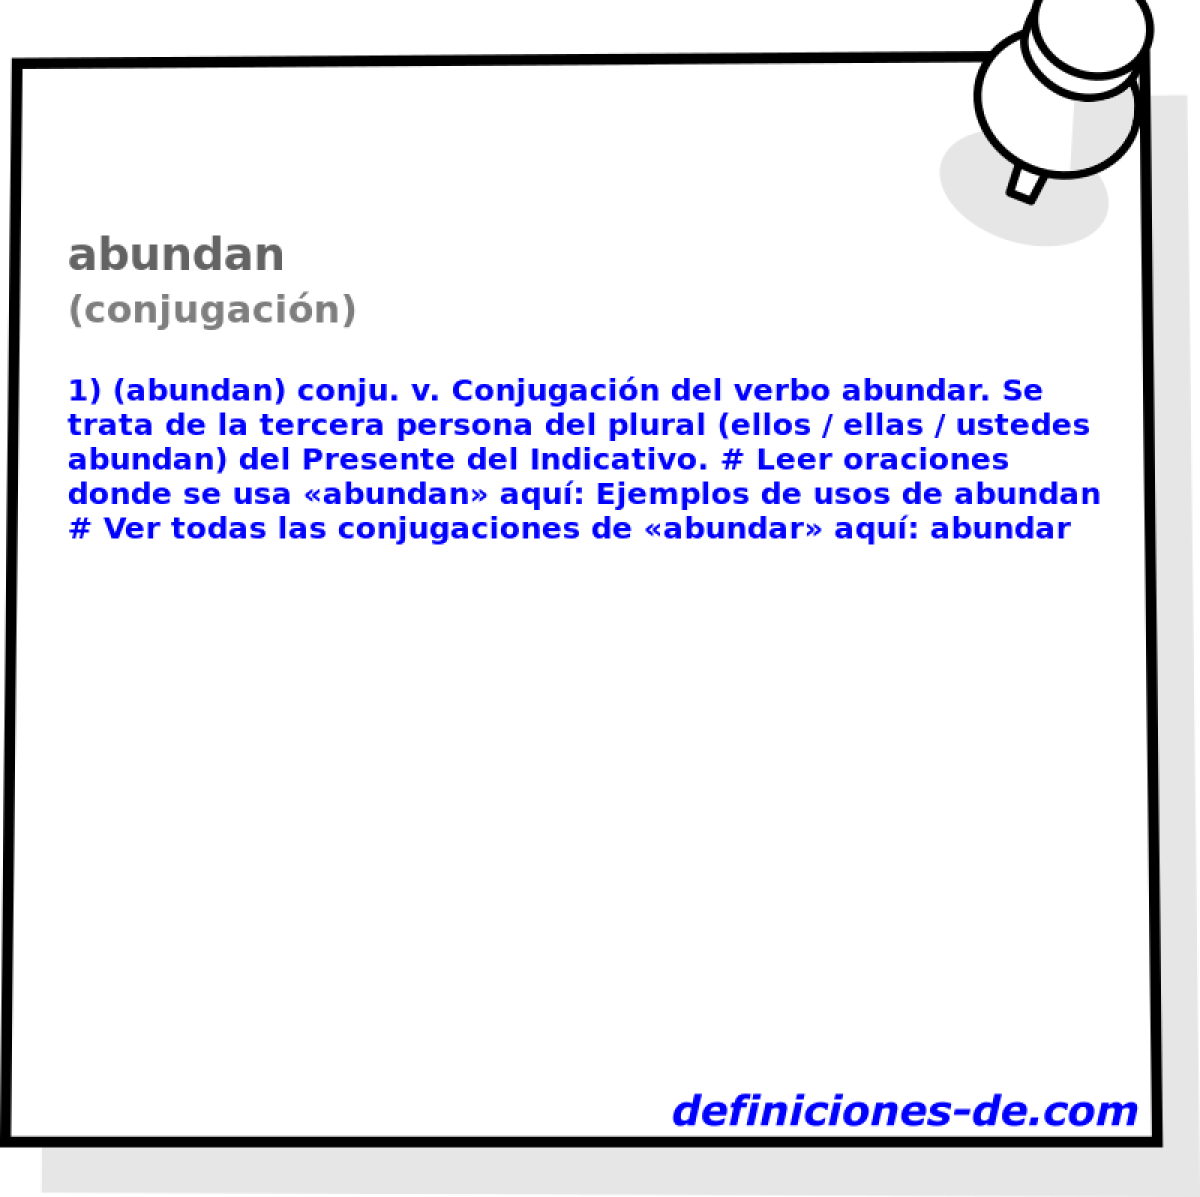 abundan (conjugacin)